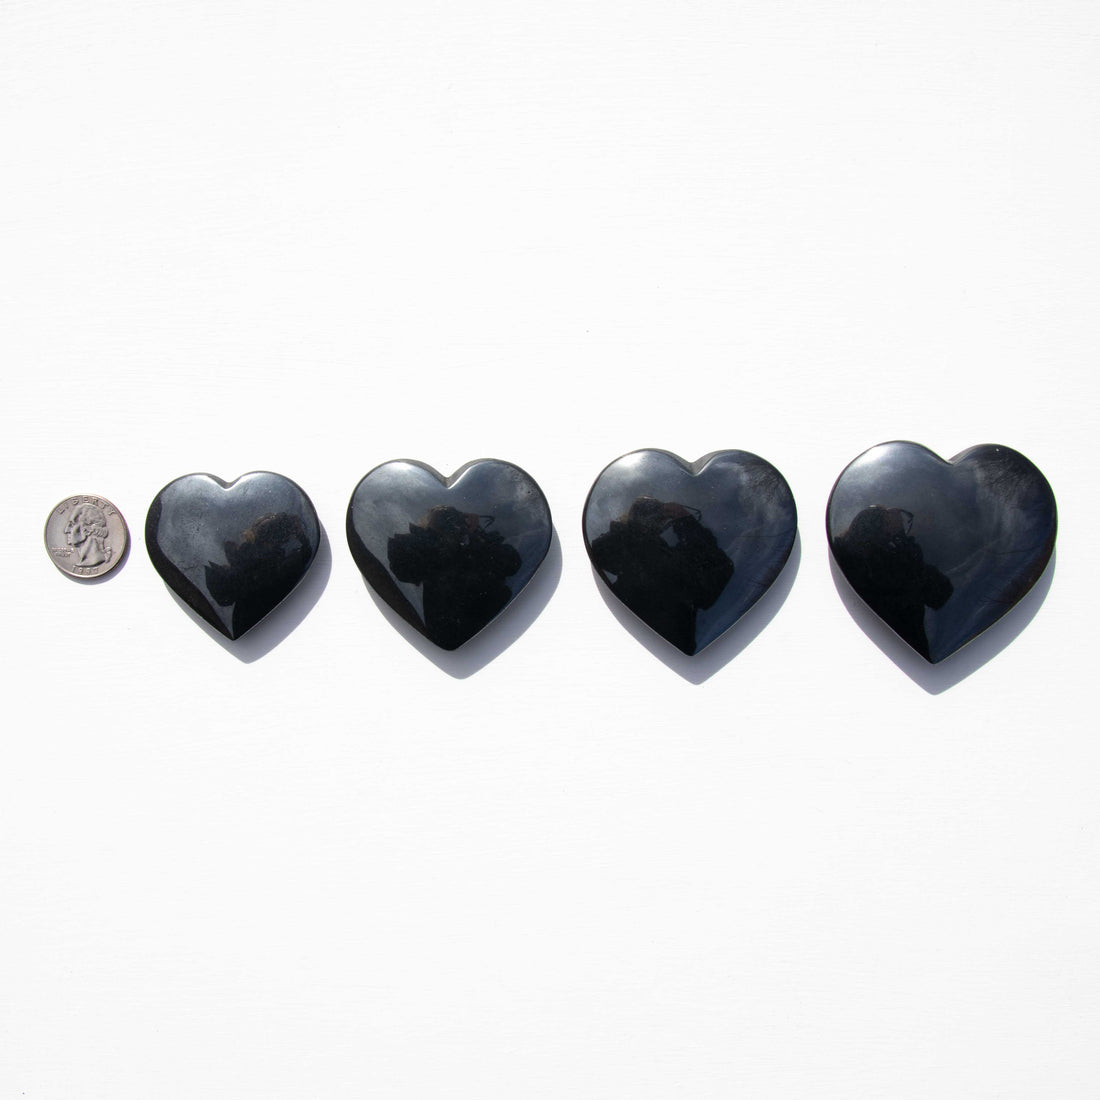 Hematite - Polished, Hearts